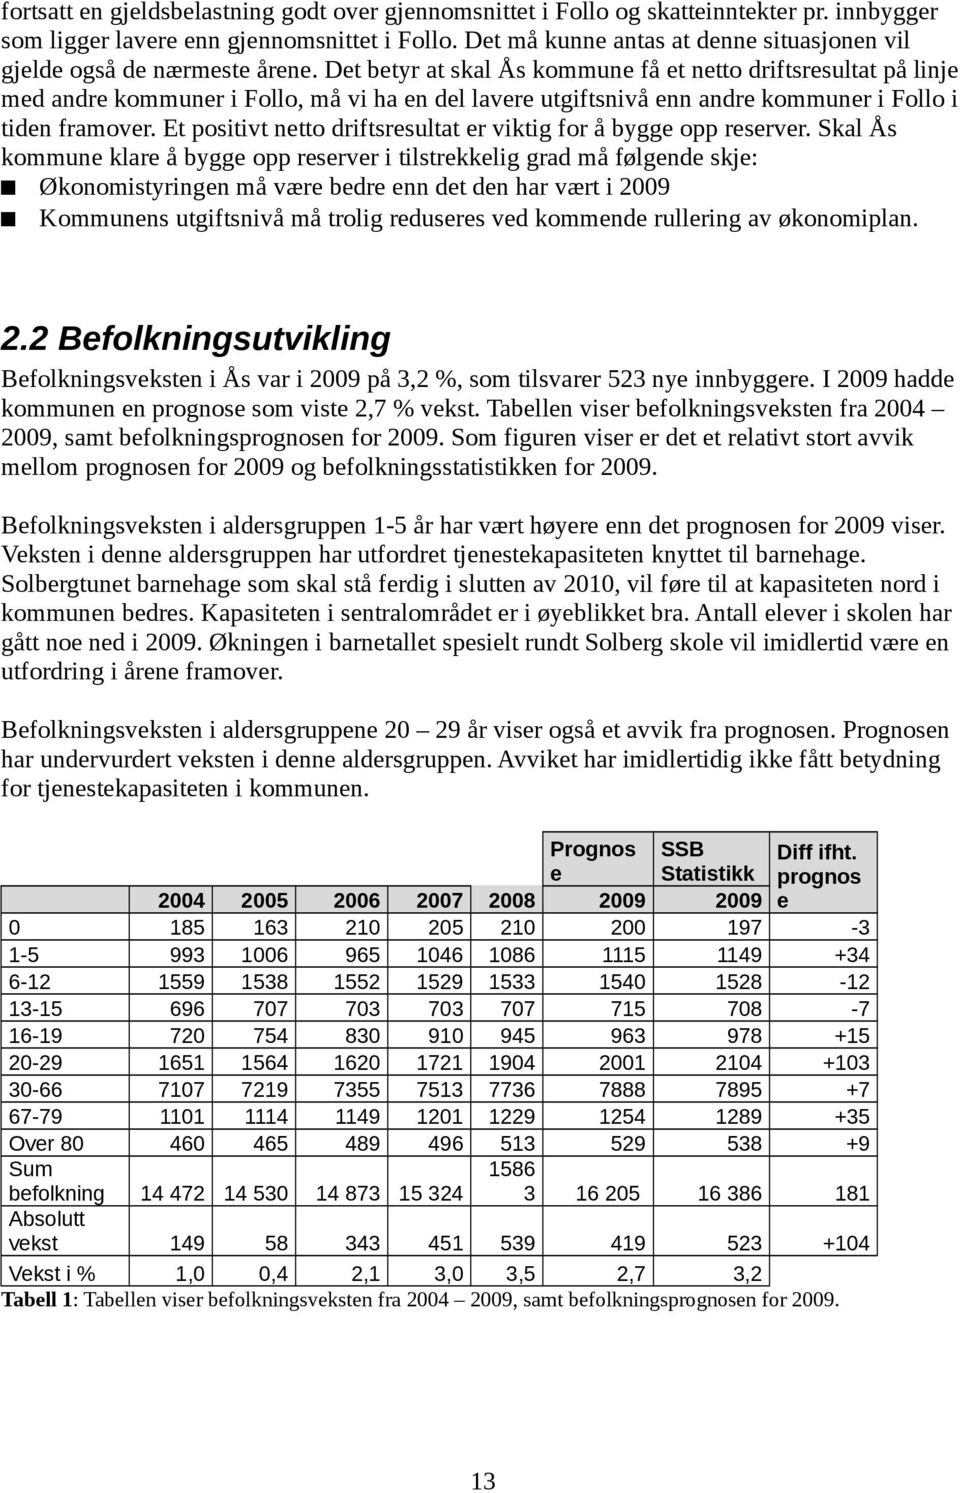 Det betyr at skal Ås kommune få et netto driftsresultat på linje med andre kommuner i Follo, må vi ha en del lavere utgiftsnivå enn andre kommuner i Follo i tiden framover.